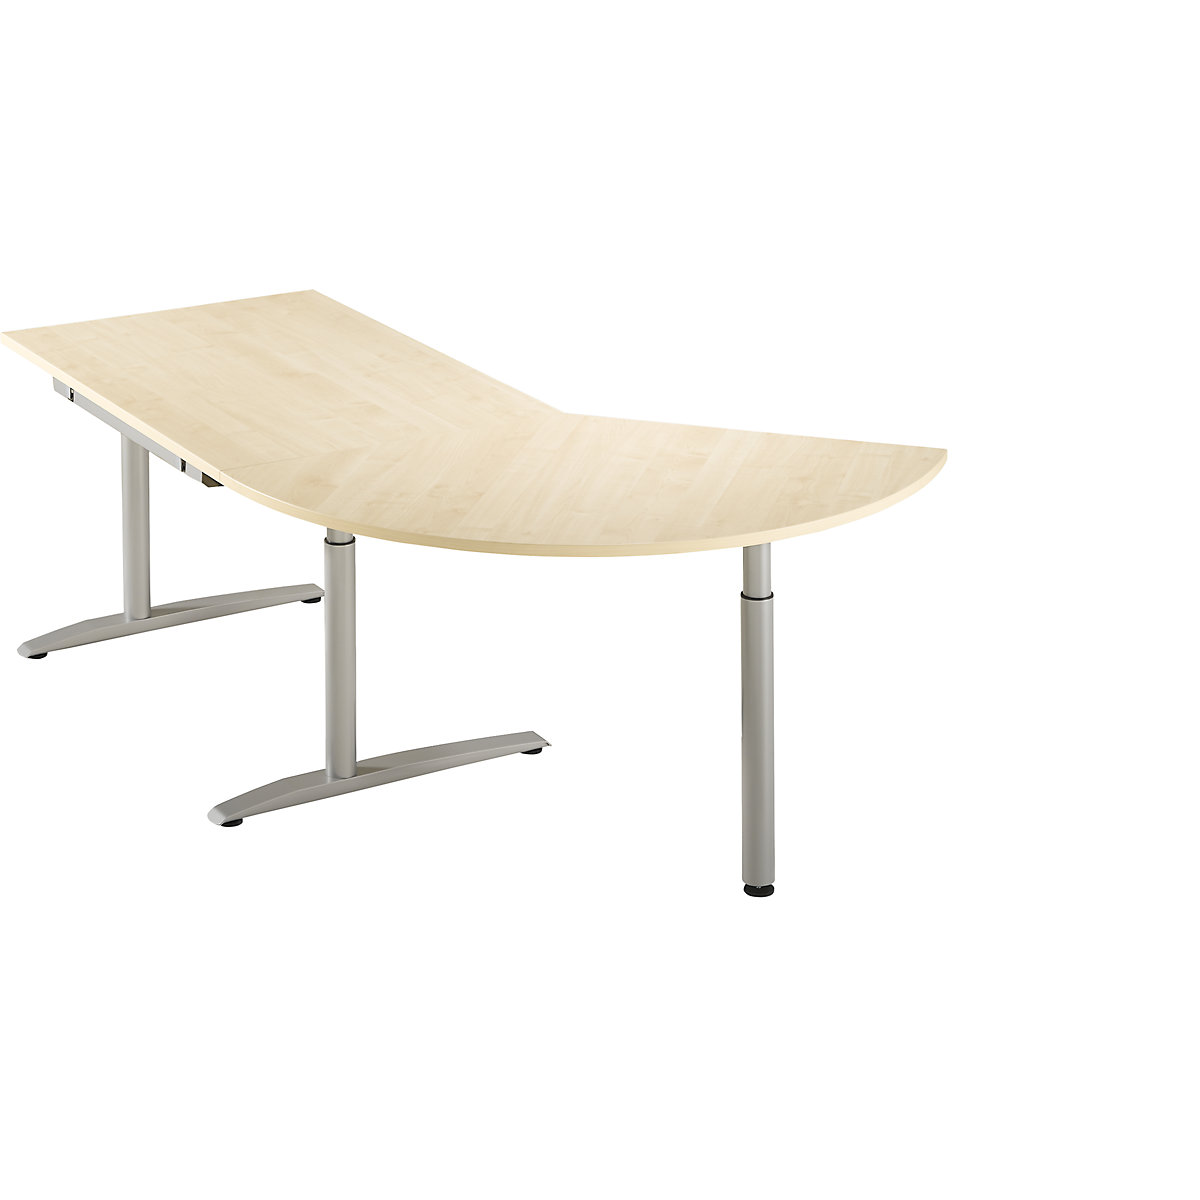 HANNA Table d'extension réglable en hauteur de 650 à 850 mm, 3/8 de cercle, avec pied stabilisateur, façon érable